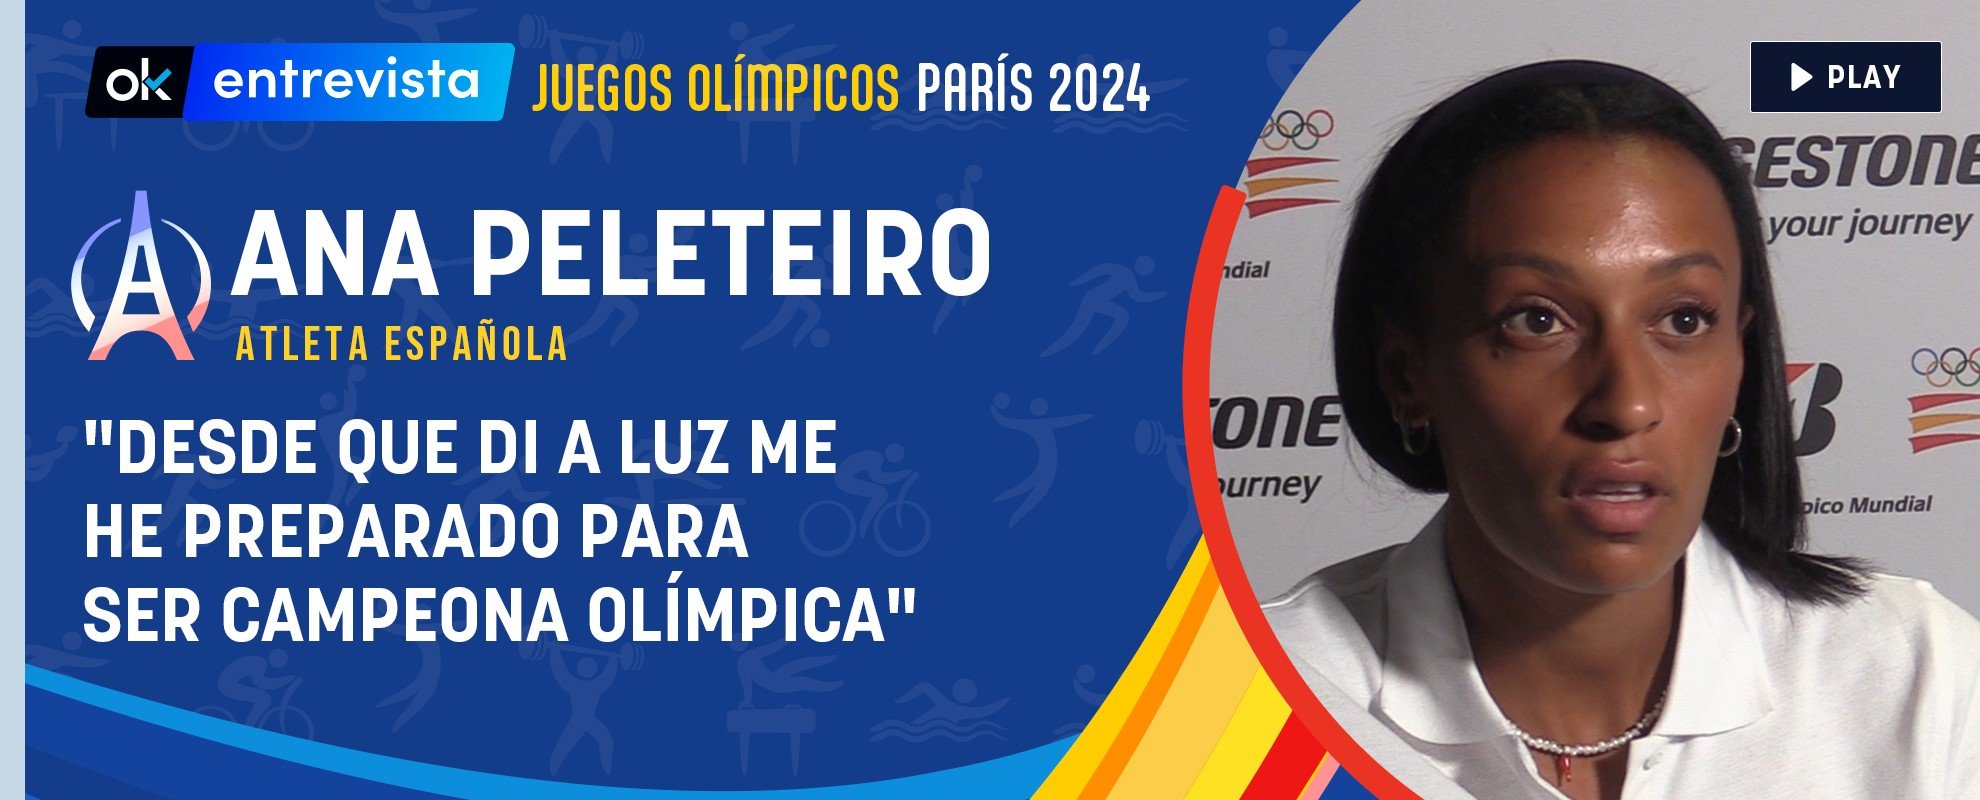 Ana Peleteiro: Desde que di a luz me he preparado para ser campeona olímpica